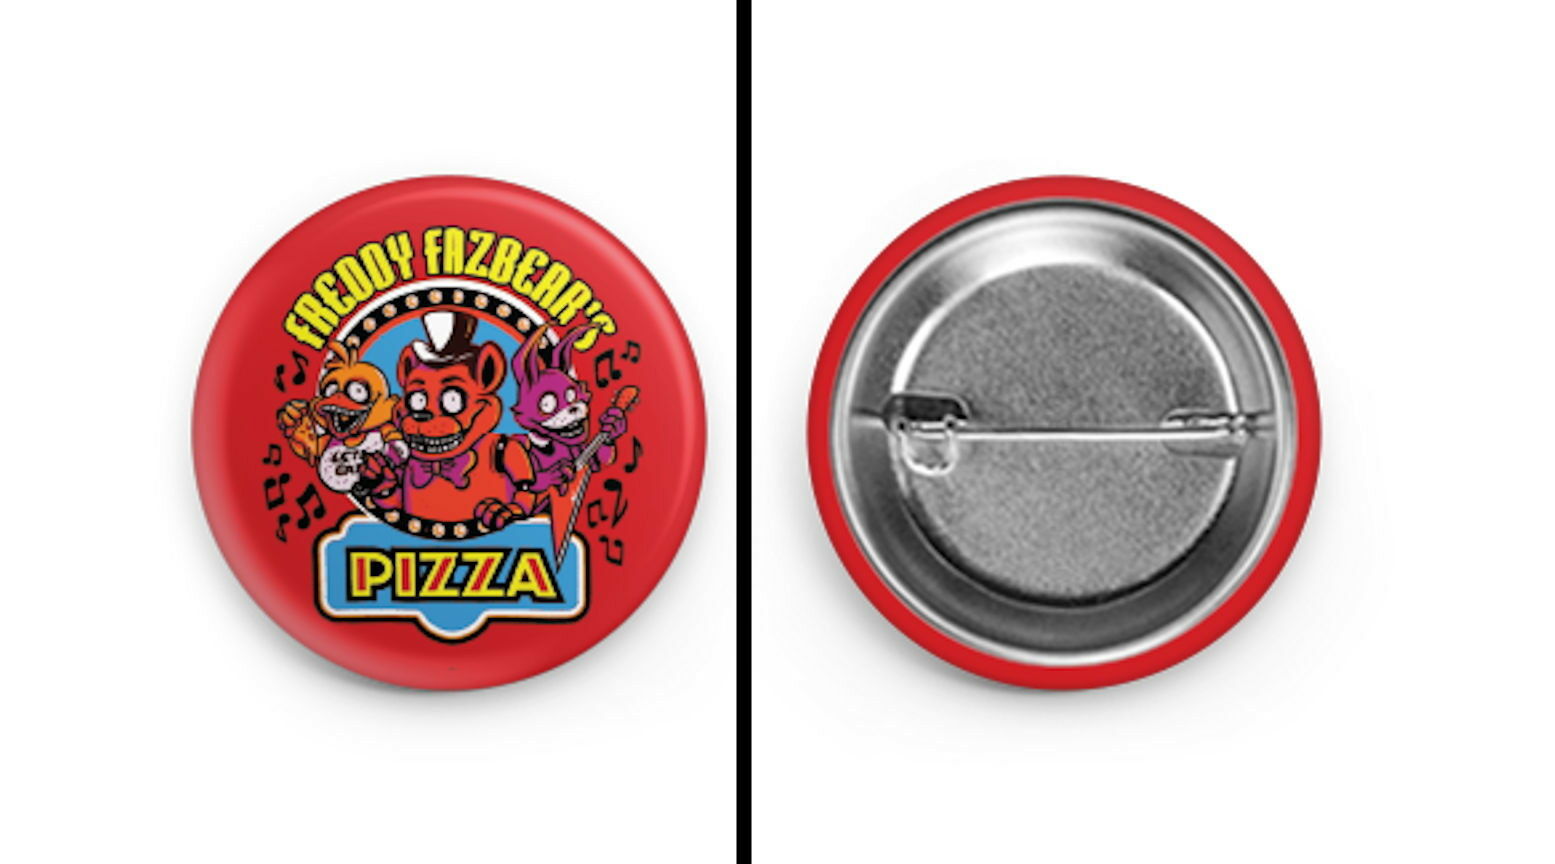 Freddy Fazbear's Pizza 5 Five Nights At Freddy's Promo Button